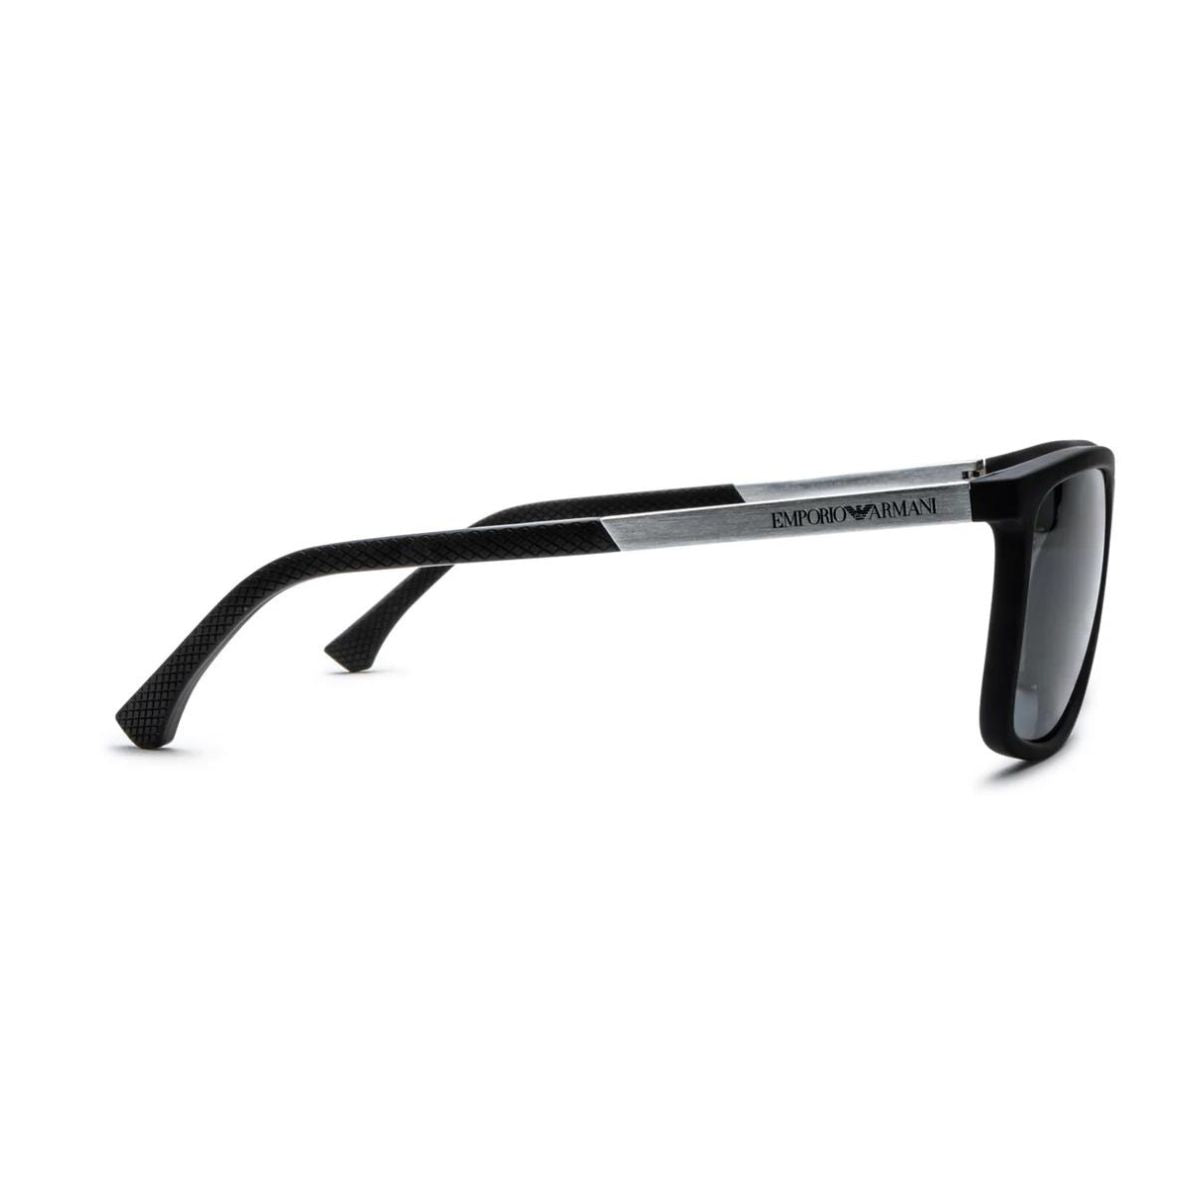 "Emporio Armani EA 4058 5063/81 Trendy Polarized Eyewear Sunglass For Men's At Optorium"